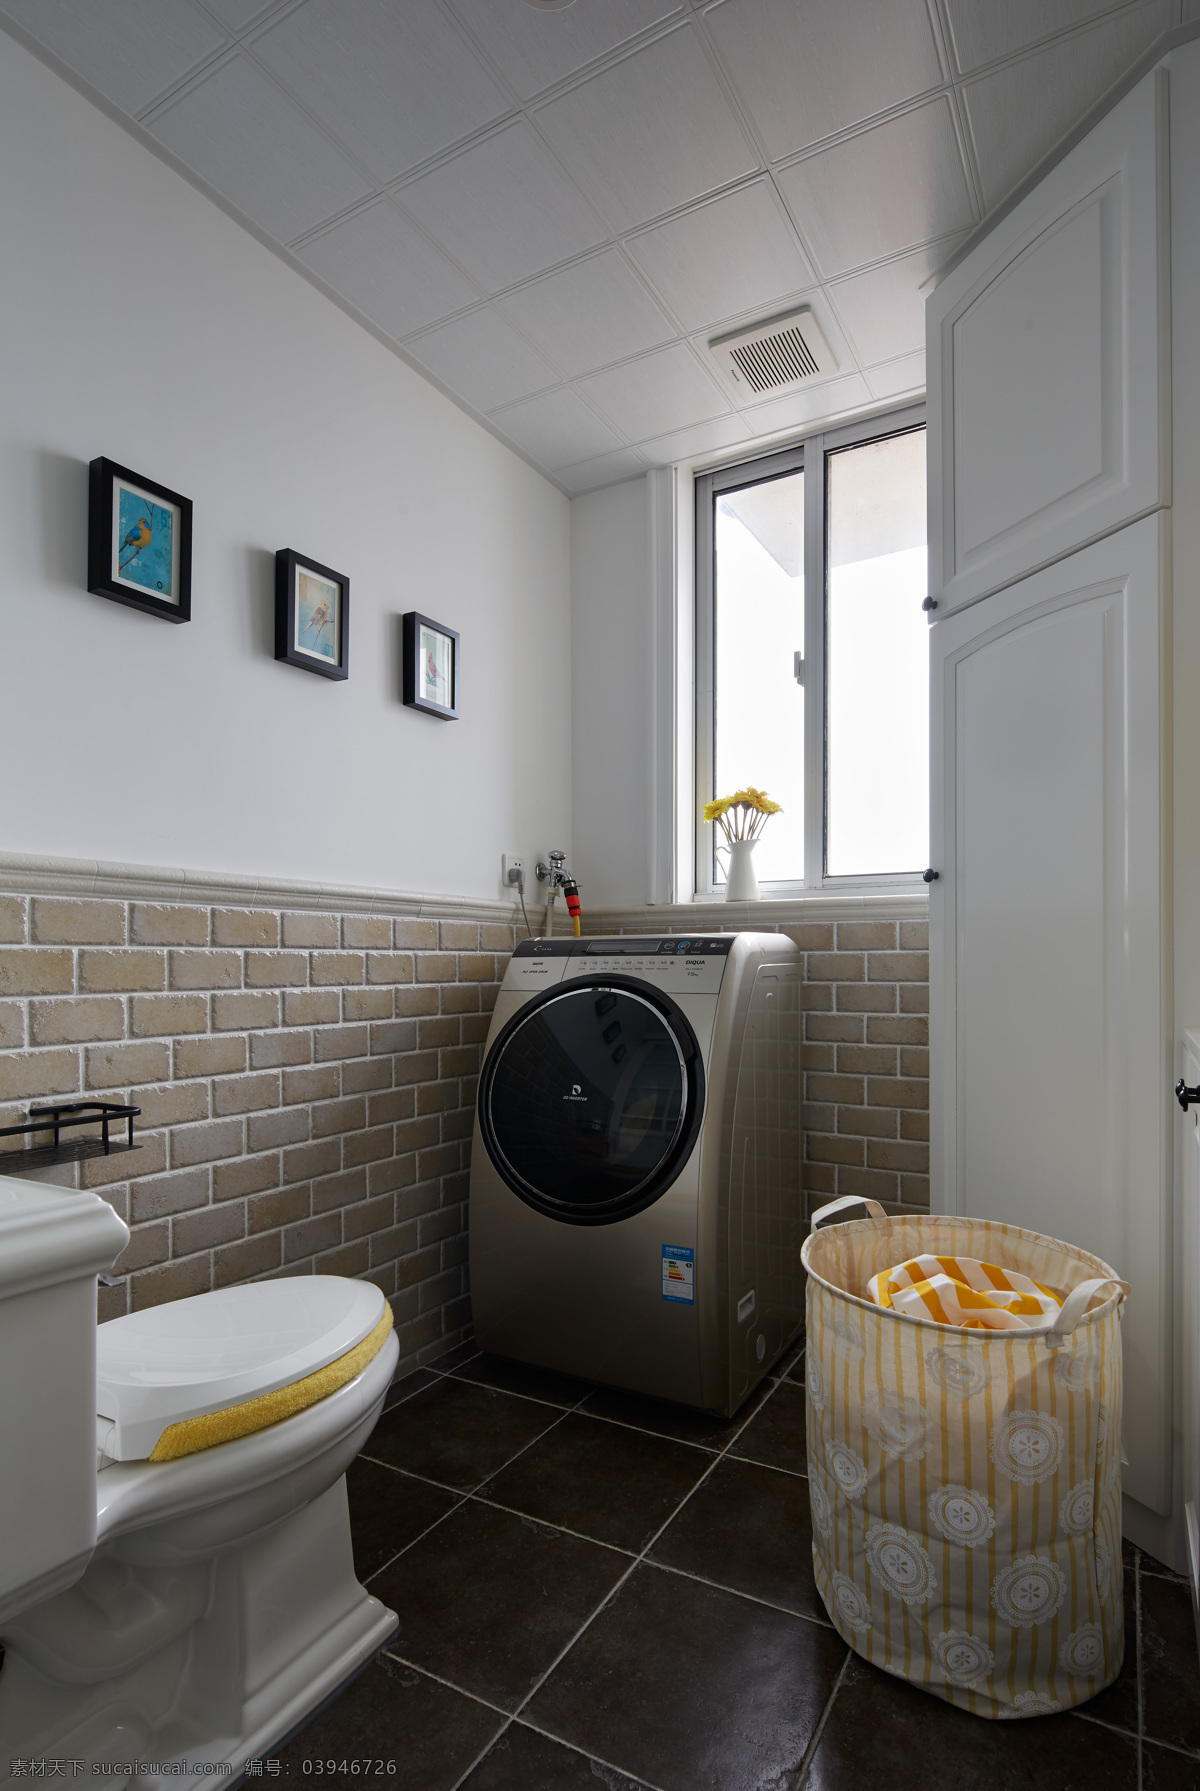 现代 简 欧 风格 浴室 洗衣机 装修 效果图 简欧风格 时尚 大理石地面 马桶